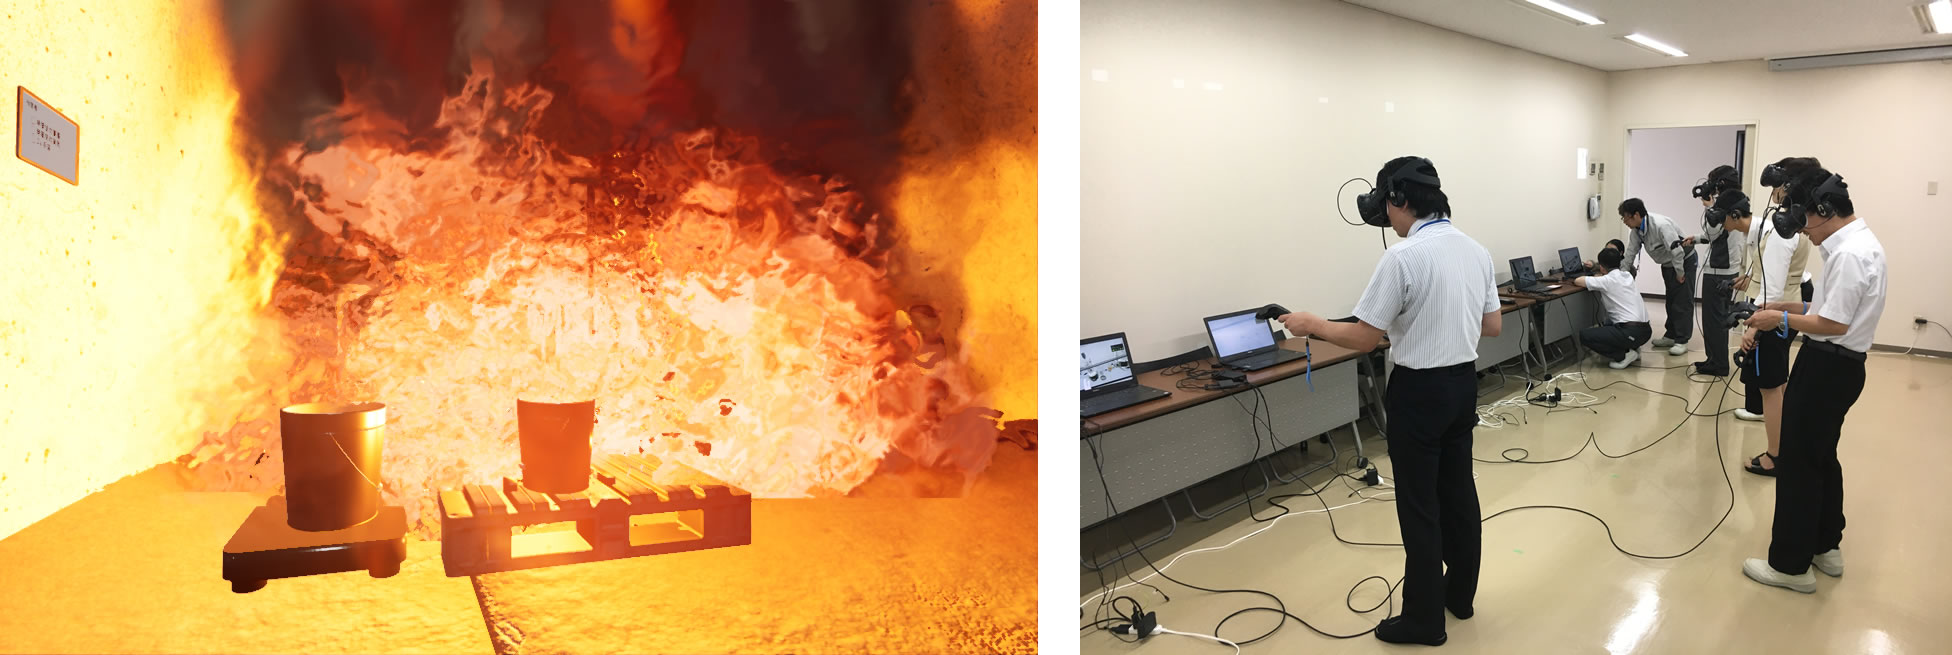 実験中の事故を防ぐため、VR教材で危険な実験を疑似体験　仮想現実（VR）を駆使して化学実験に関する特別安全講義を実施